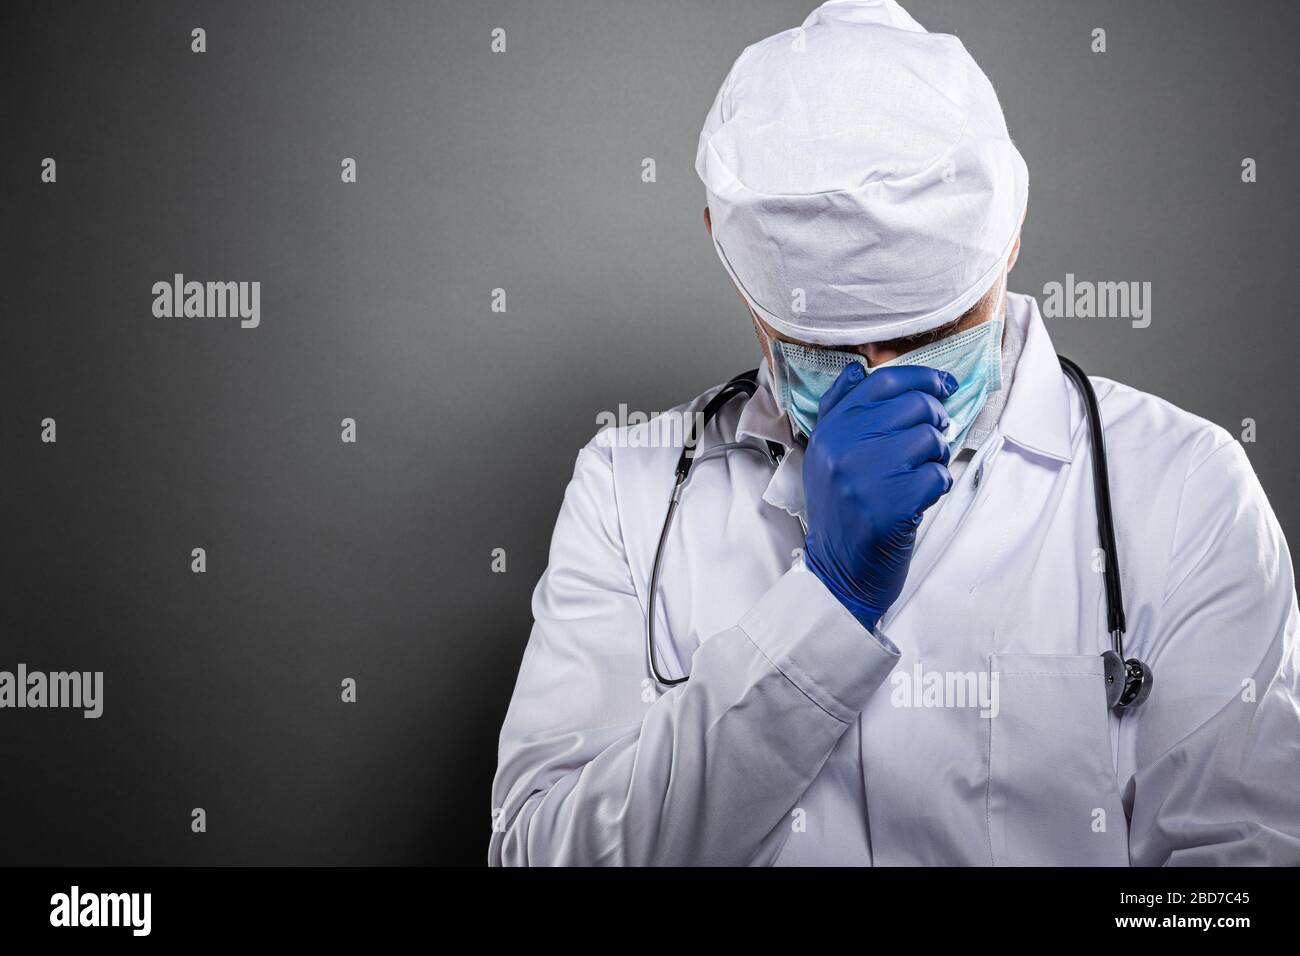 Médico cansado con exceso de trabajo durante la epidemia de coronavirus covid-19 Foto de stock